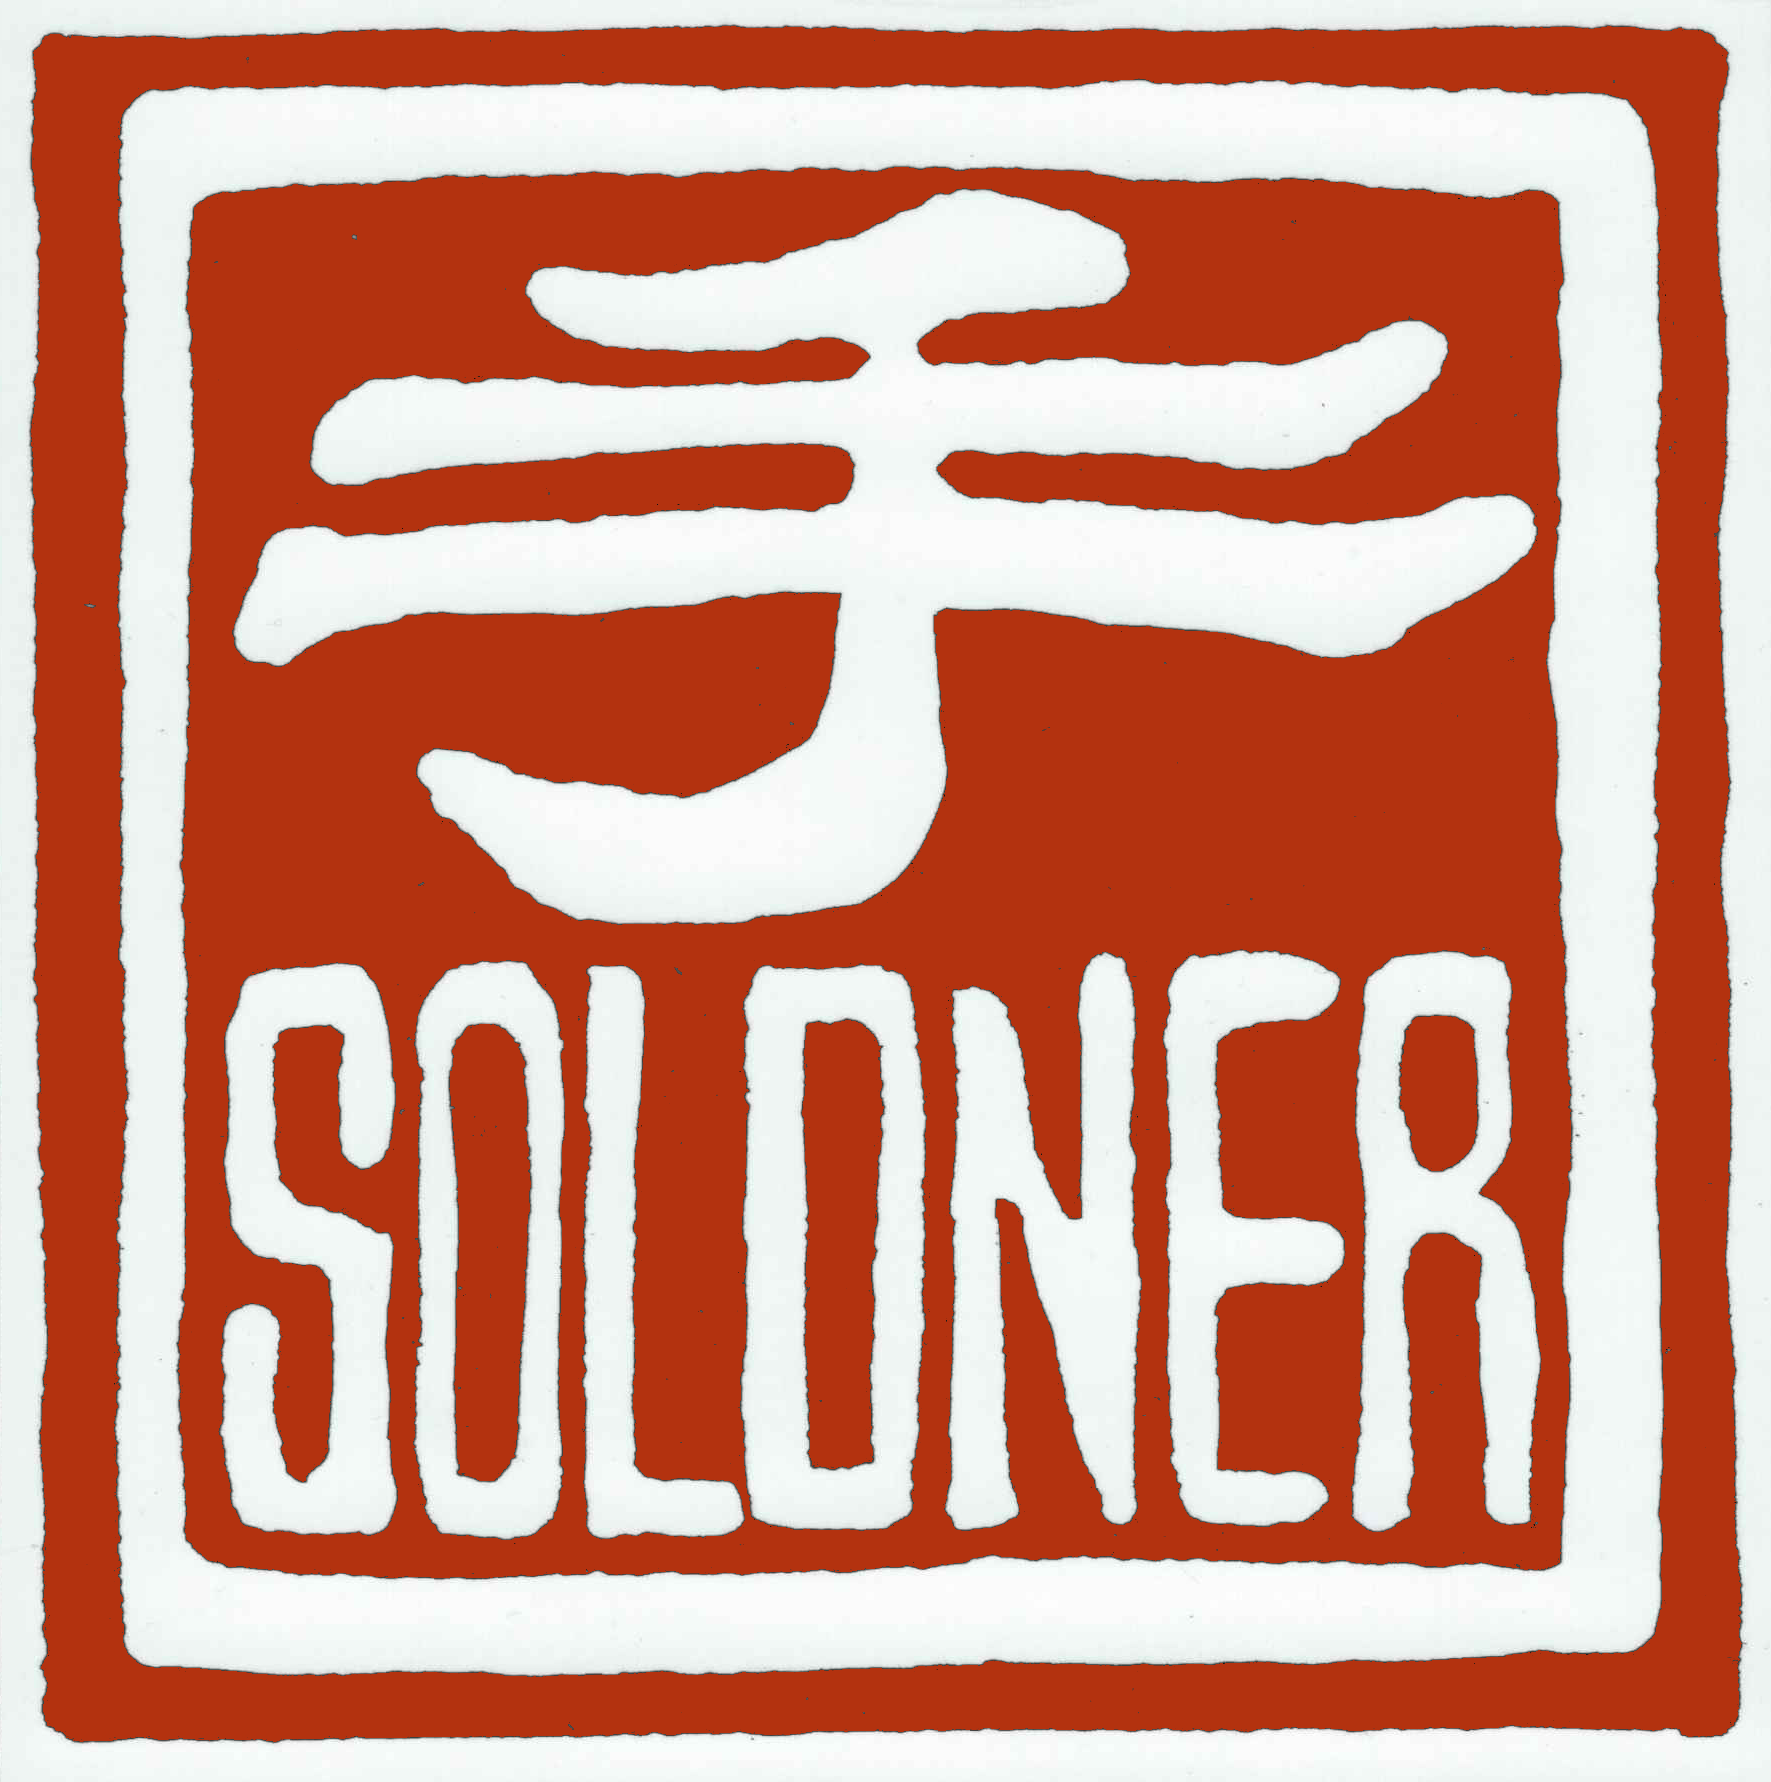 The Soldner Center